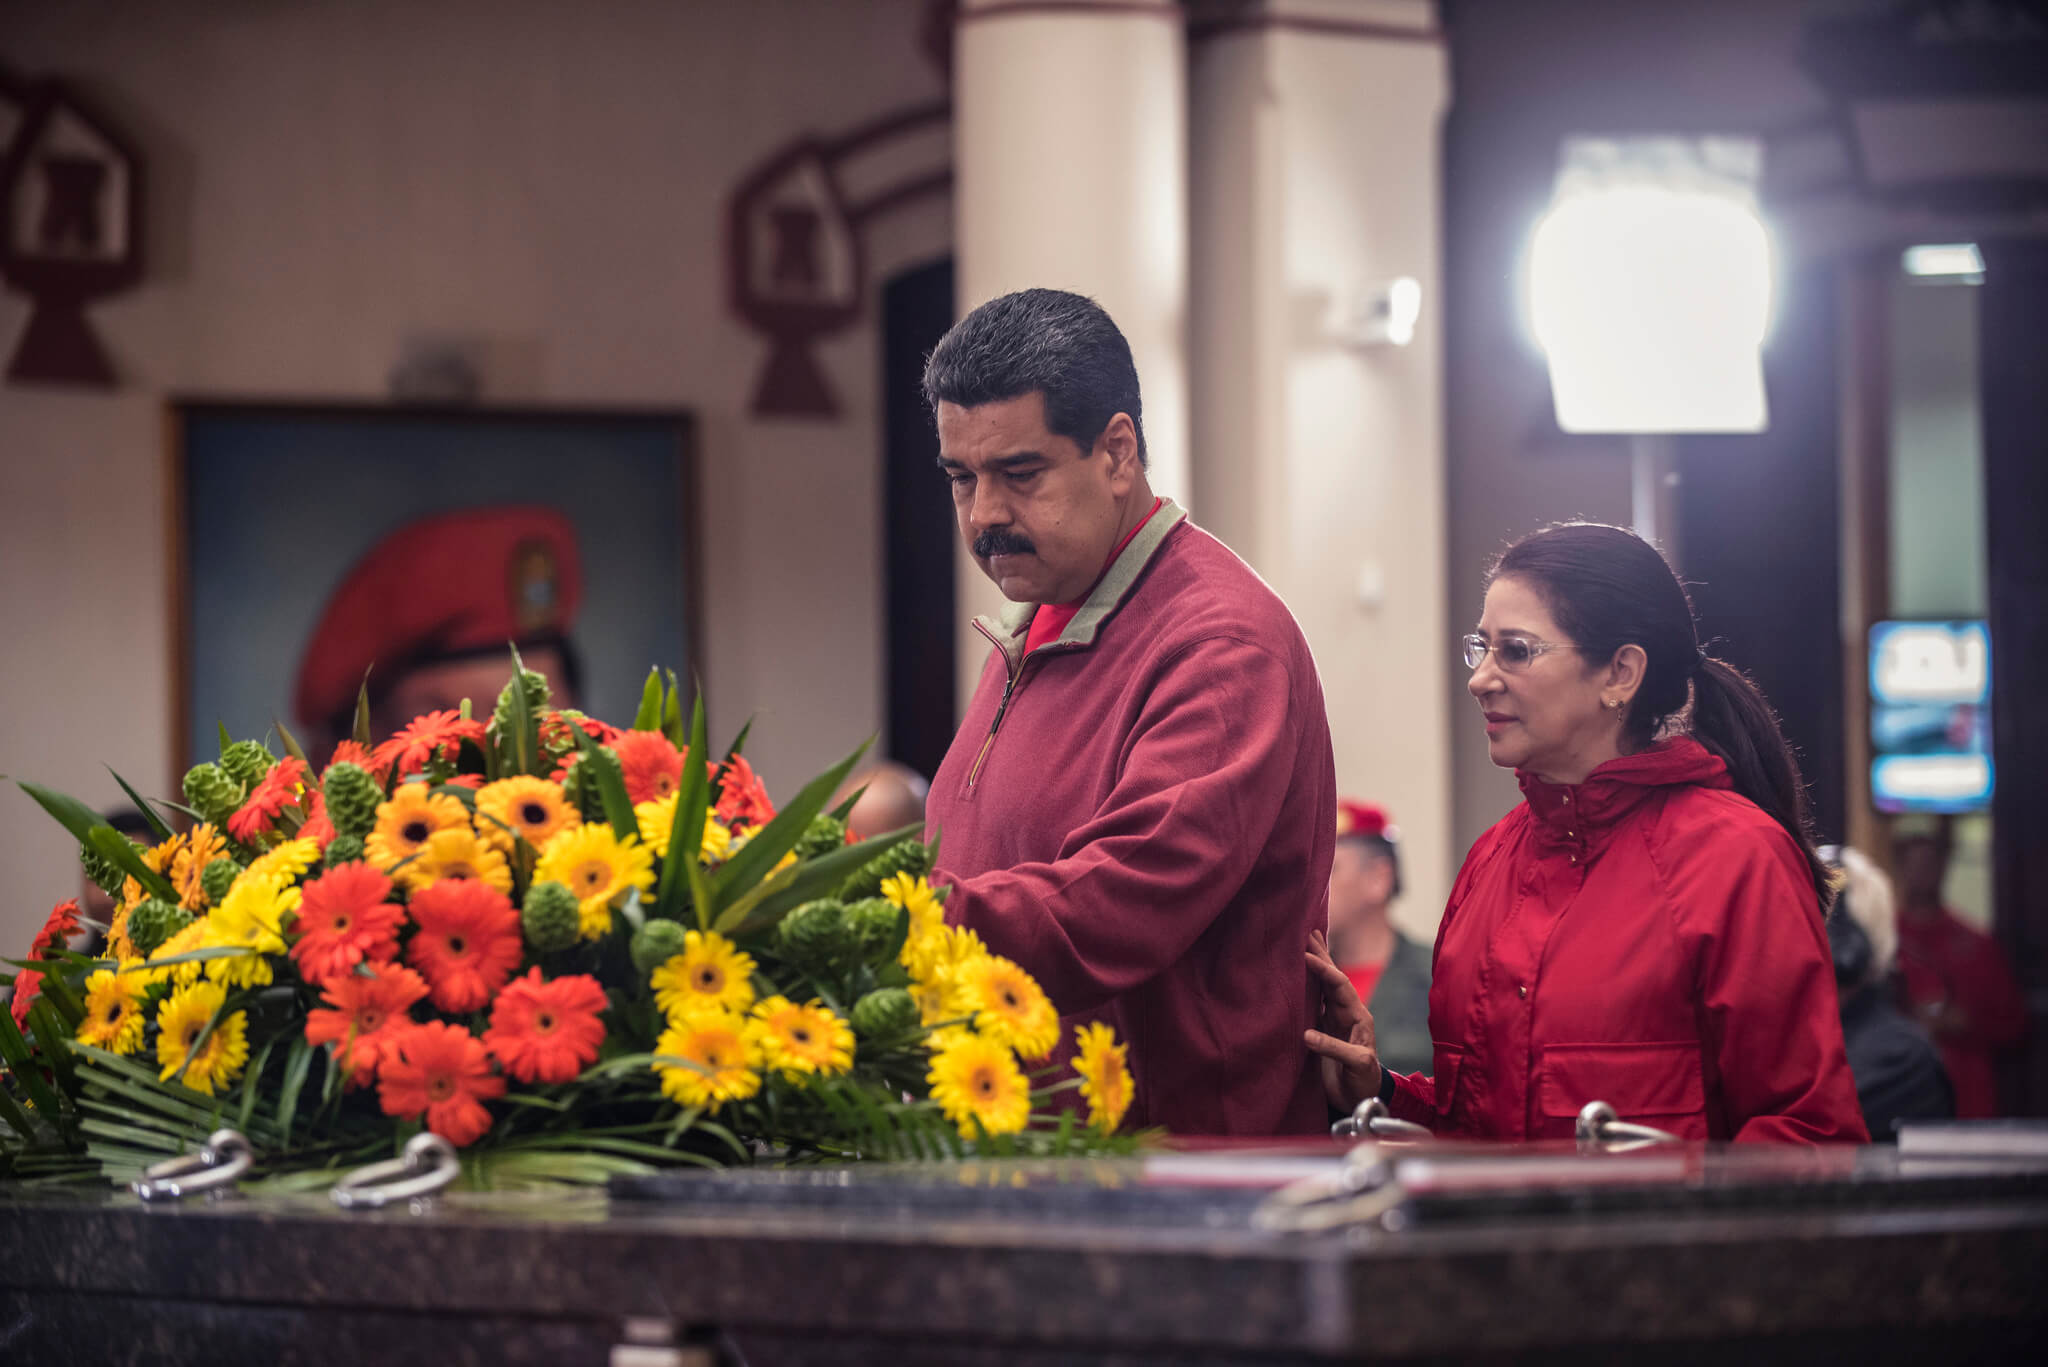 President Maduro in 2016 tijdens een herdenking van de dood van zijn voorganger Chávez. Maduro was een loyale ‘Chavista’ van het eerste uur. Bron: Eneas De Troya / Flickr